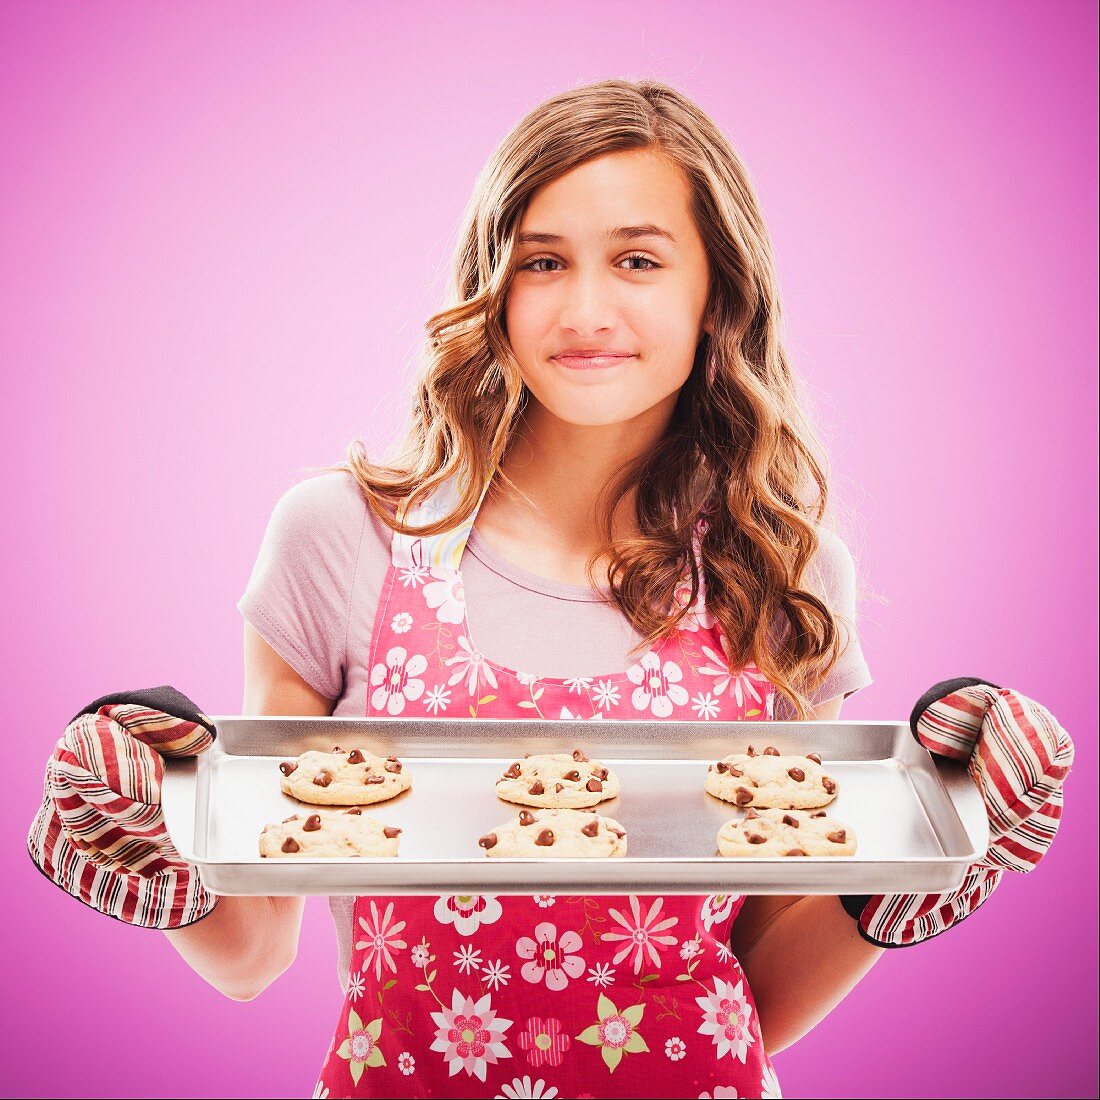 Stolzer Teenager mit selbstgebackenen Schoko-Cookies